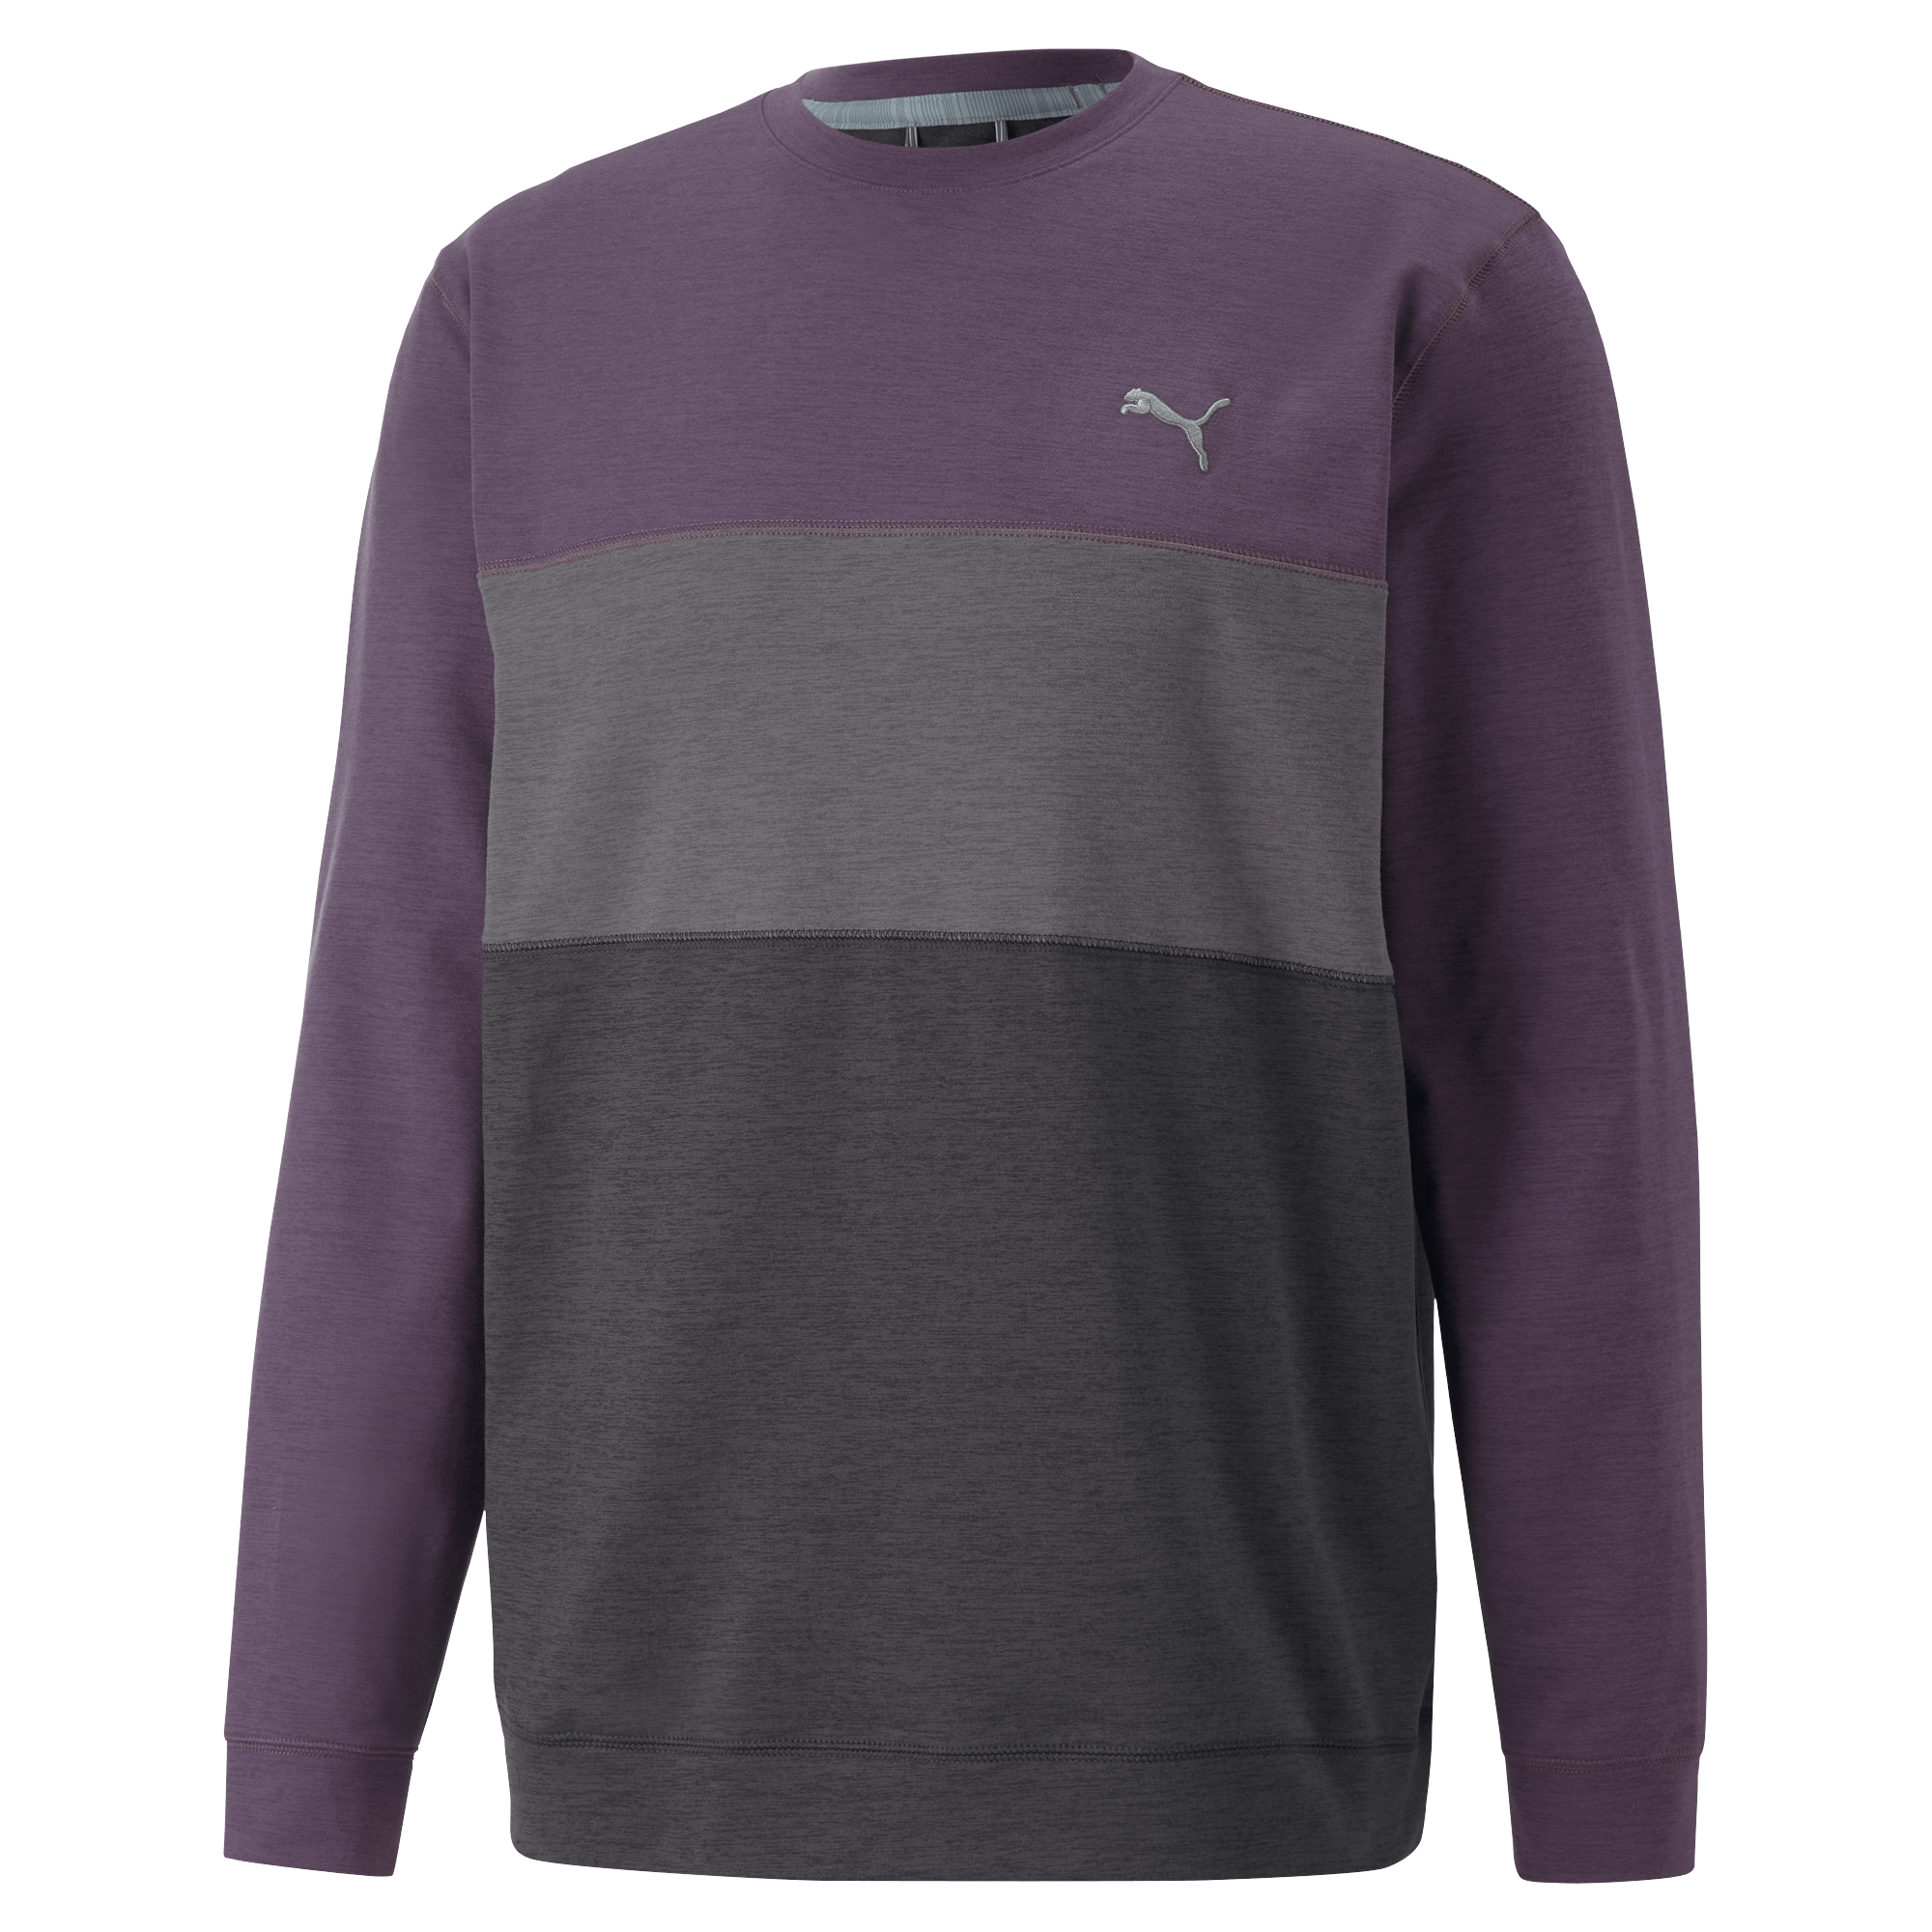 Puma Cloudspun Colorblock Crewneck Golf Sweater